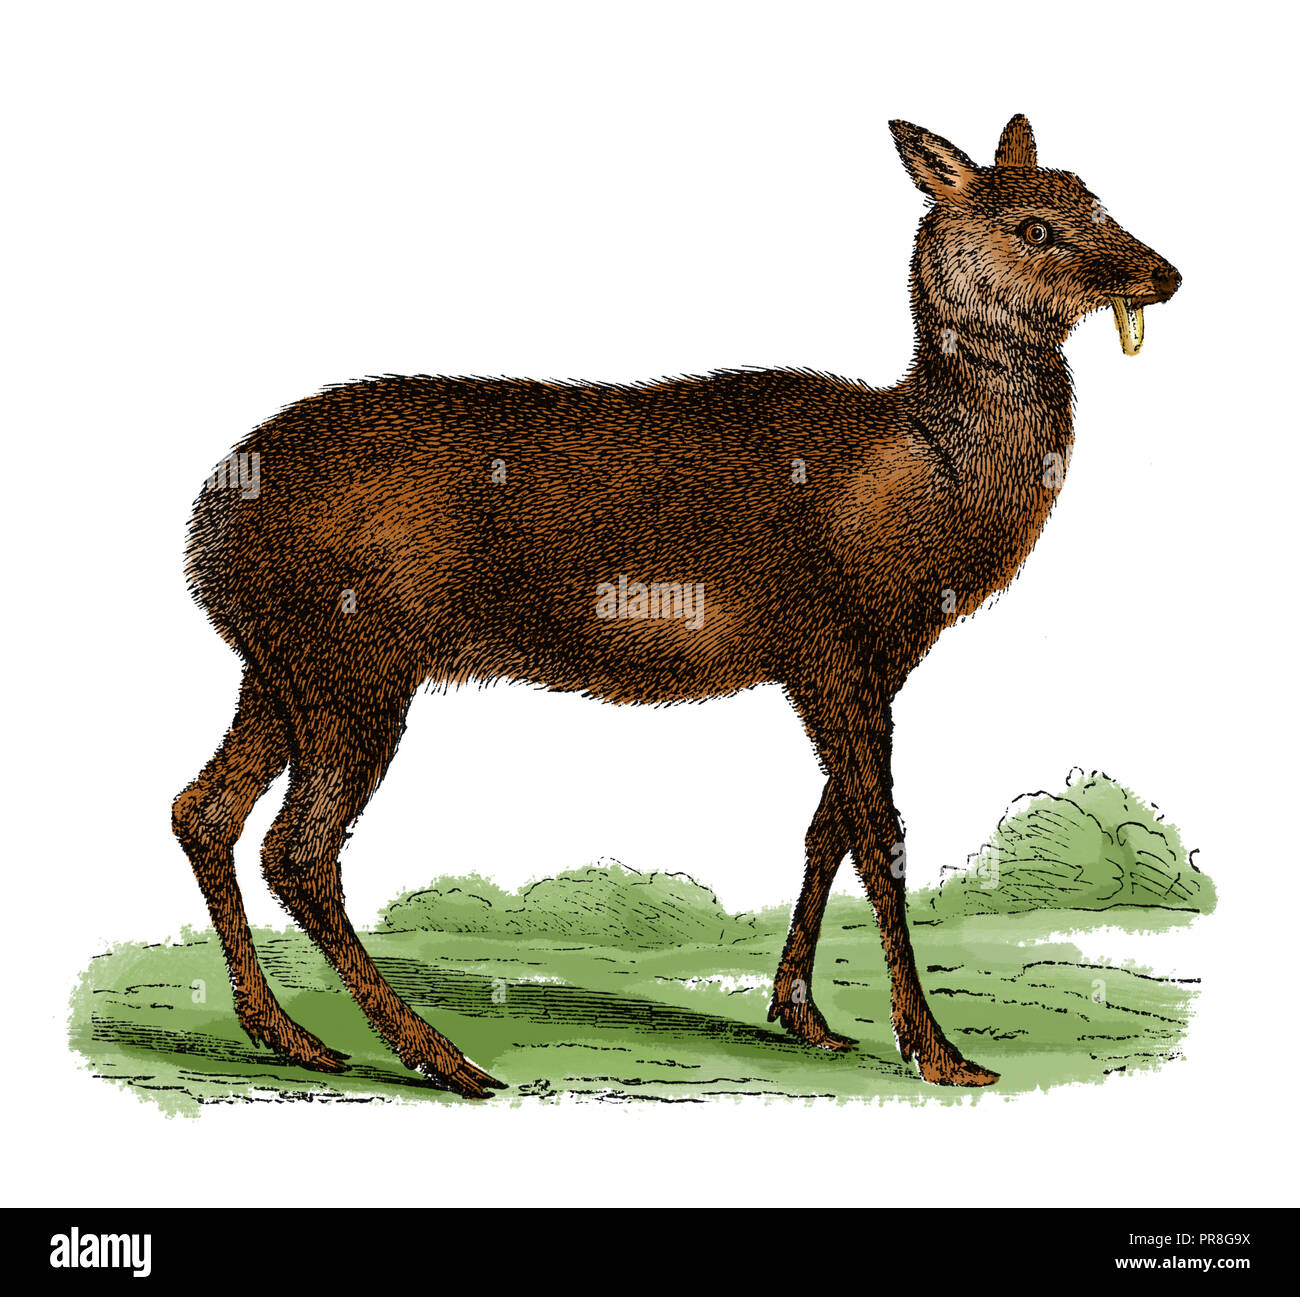 Ilustración del siglo XIX de un ciervo almizclero - viven principalmente en hábitats boscosos y matorral alpino en las montañas del sur de Asia, en particular los Himalayas. Foto de stock